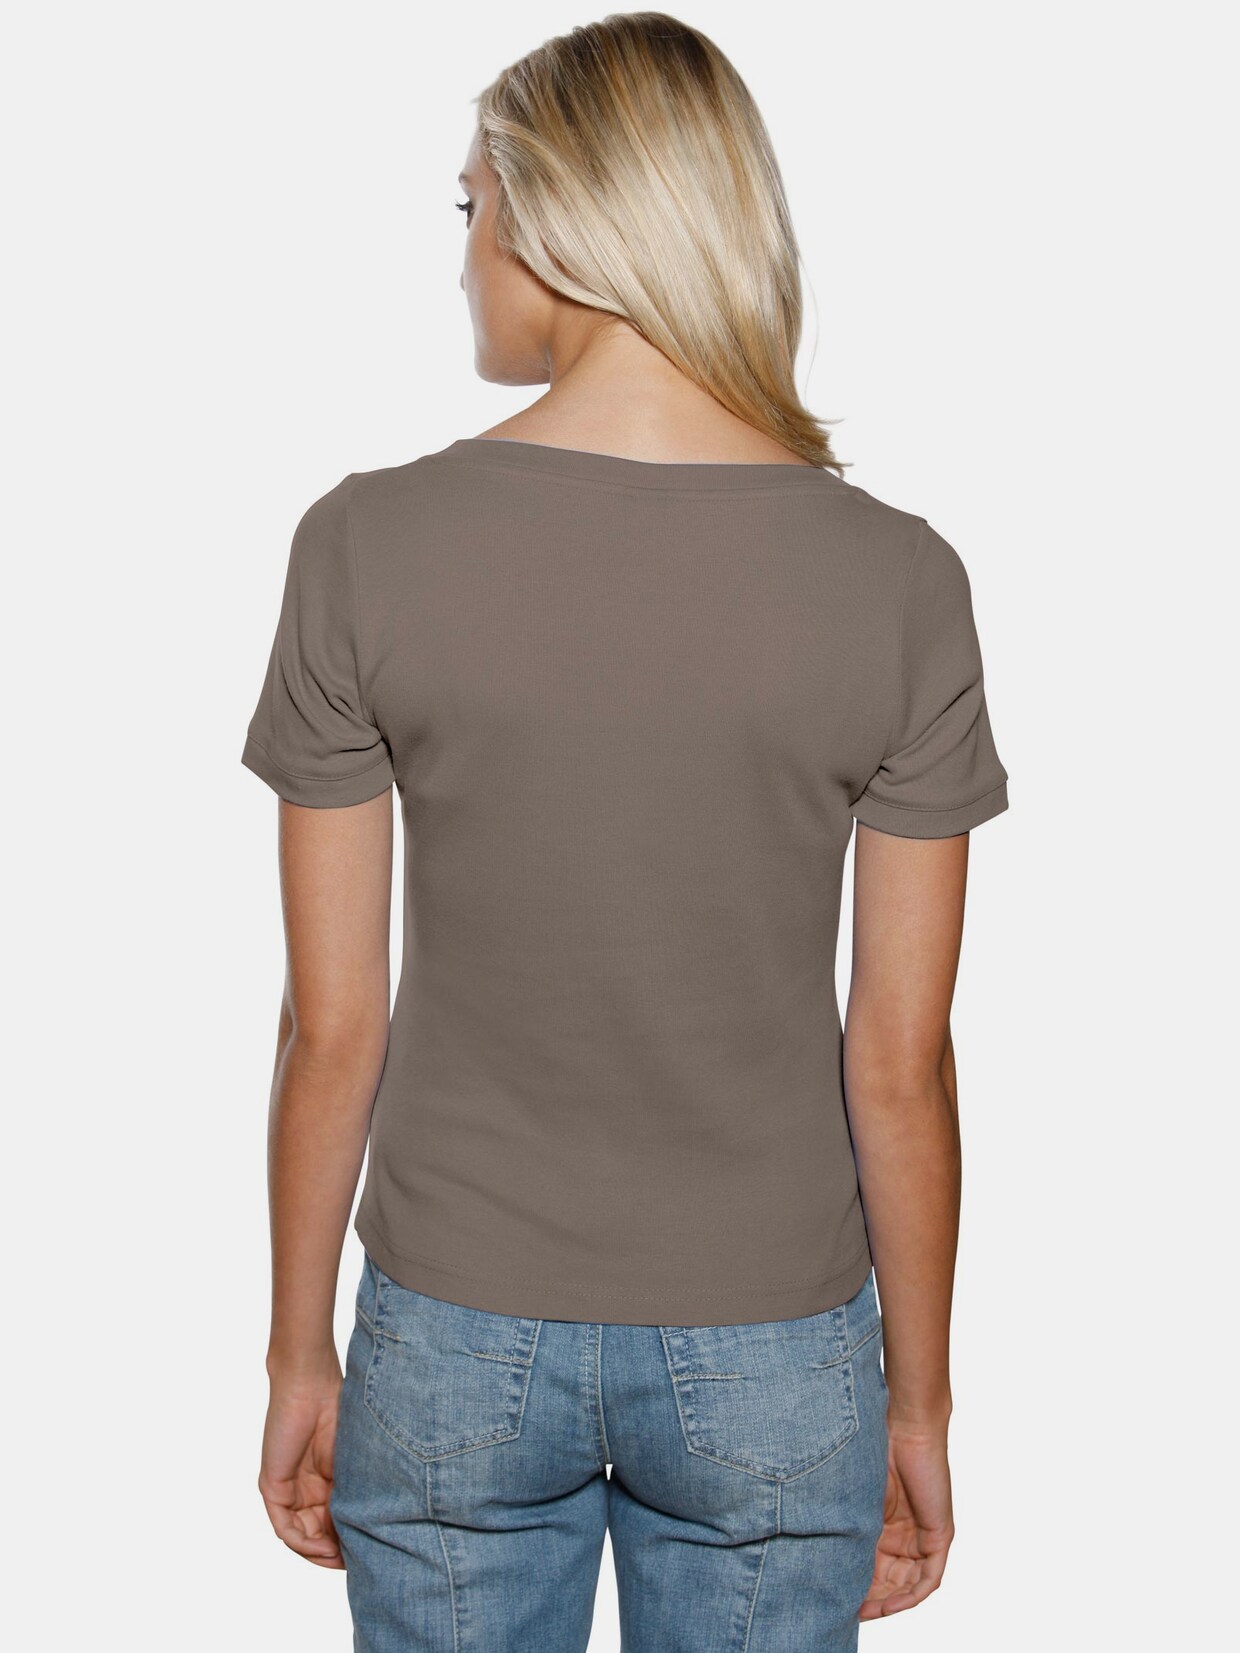 Linea Tesini Carré-Shirt - taupe